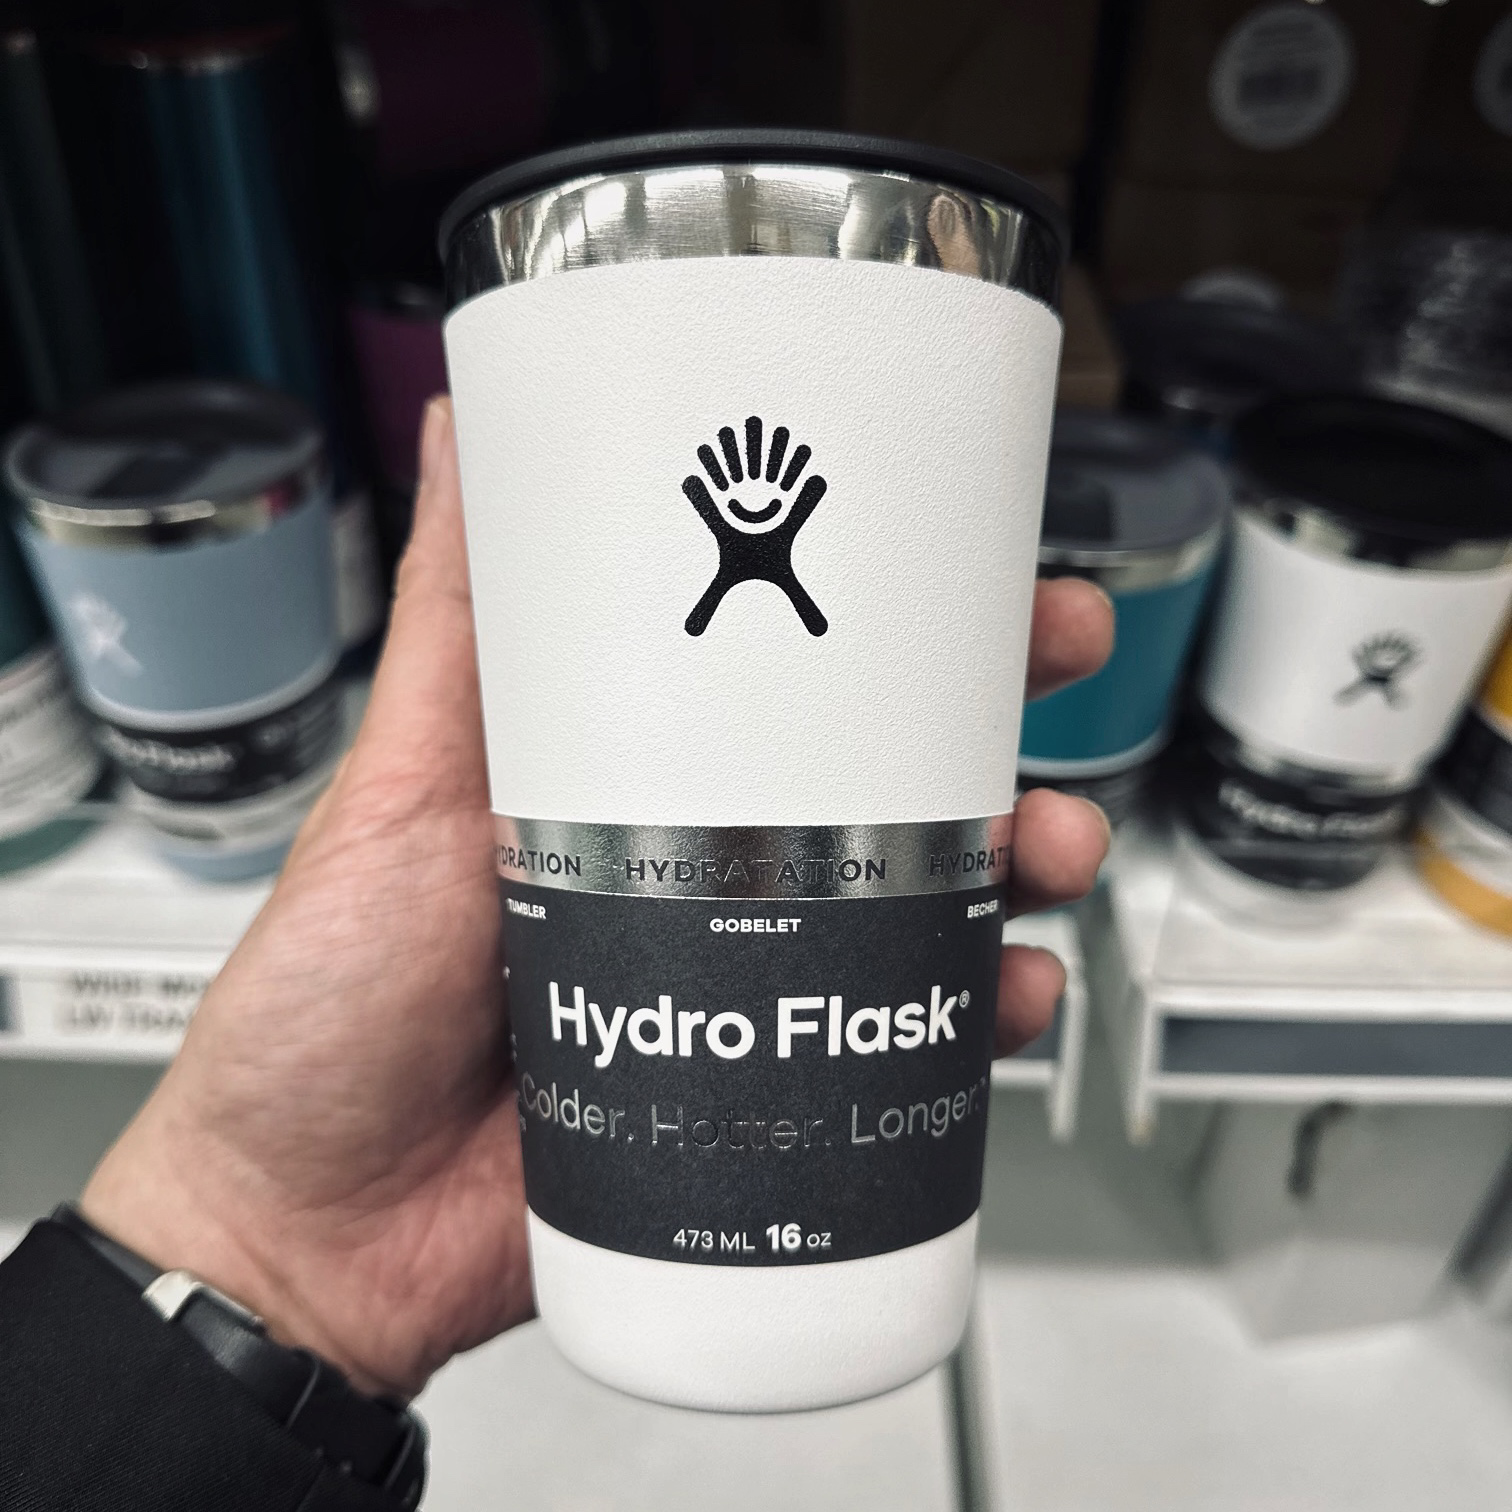 Hydro Flask 16-oz All Around Tumbler